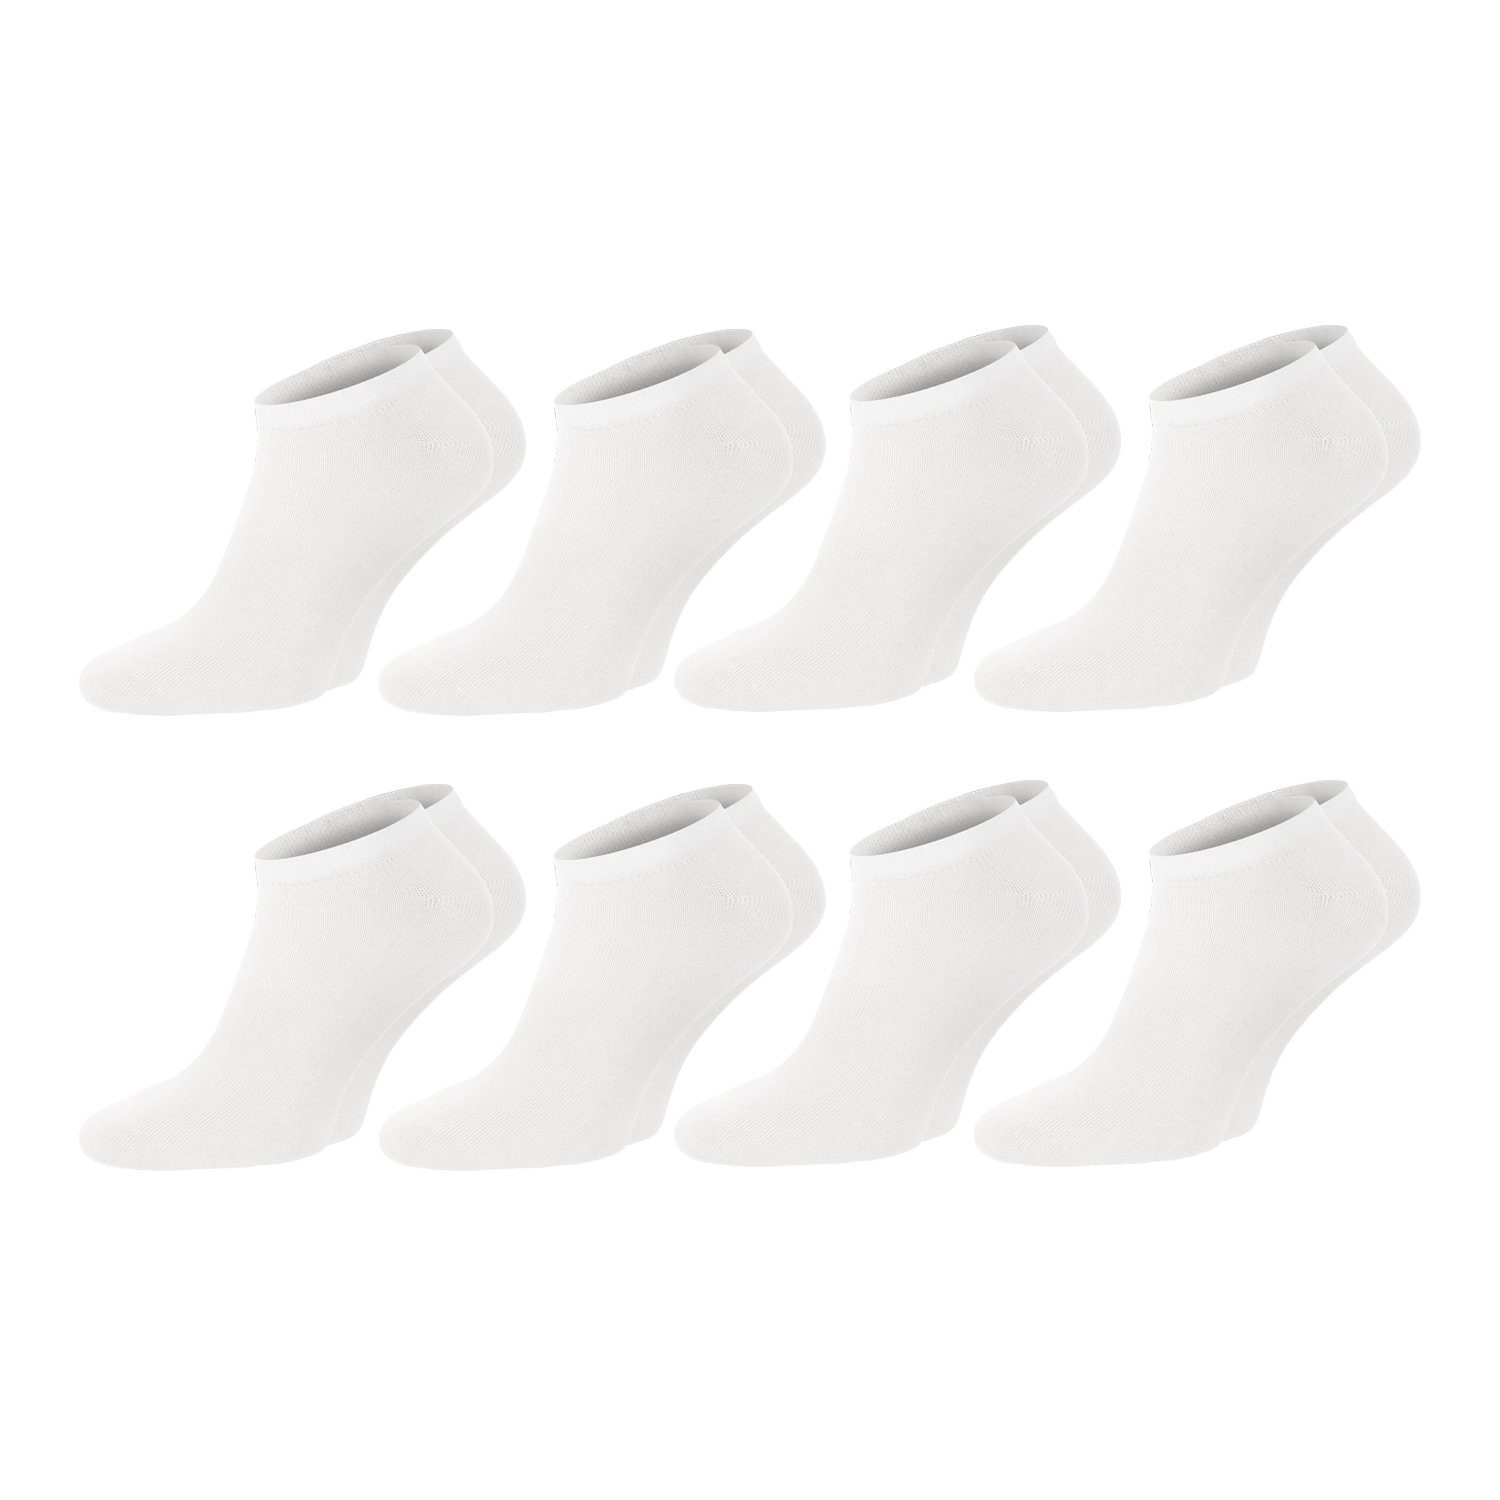 Chili Lifestyle Strümpfe Sneaker Weiß, 8 Paar, für Damen und Herren, Freizeit, atmungsaktiv